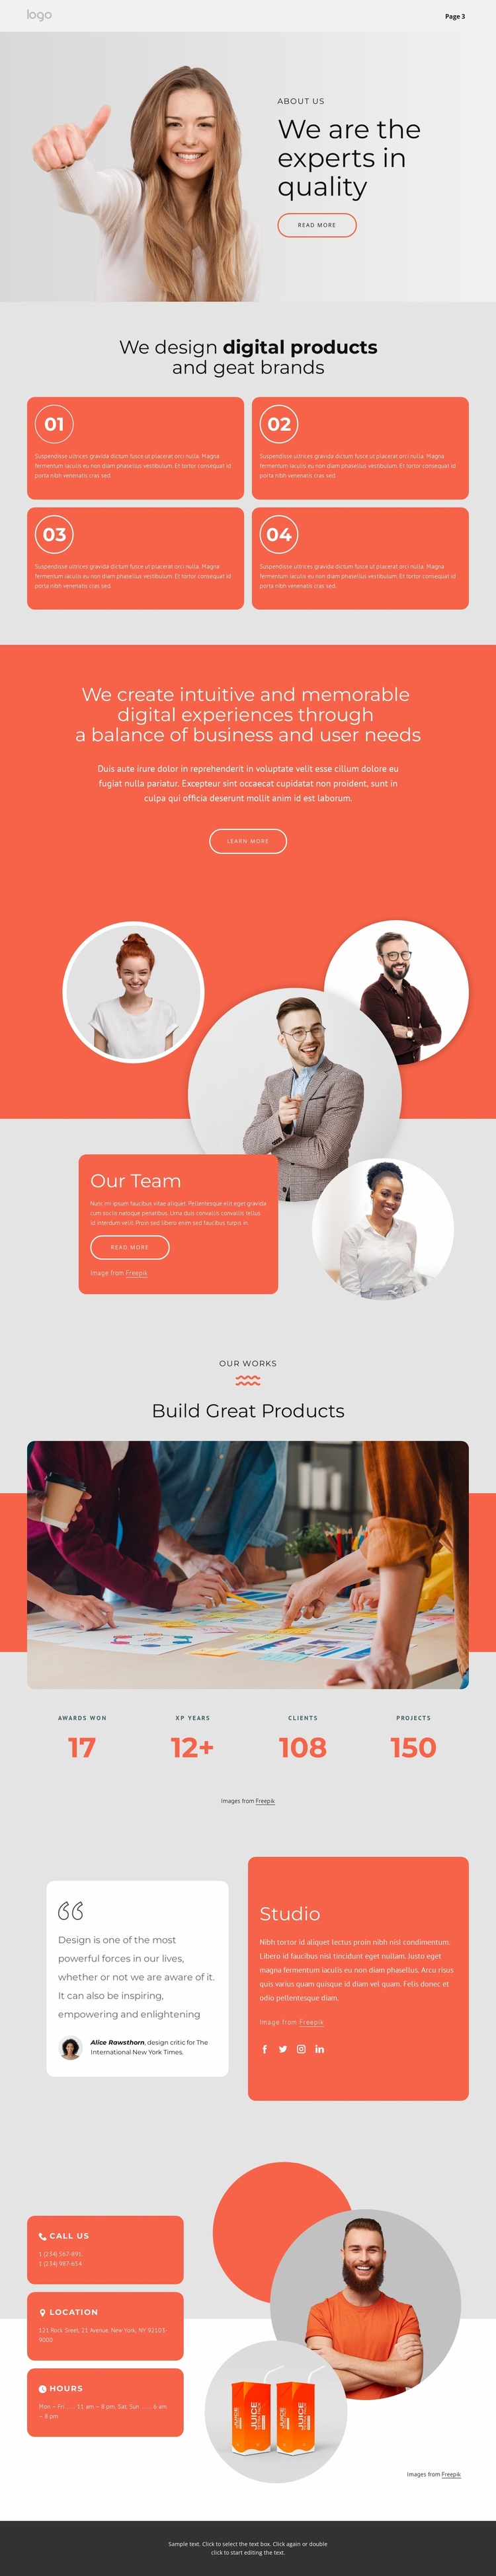 We design great brands Website Template